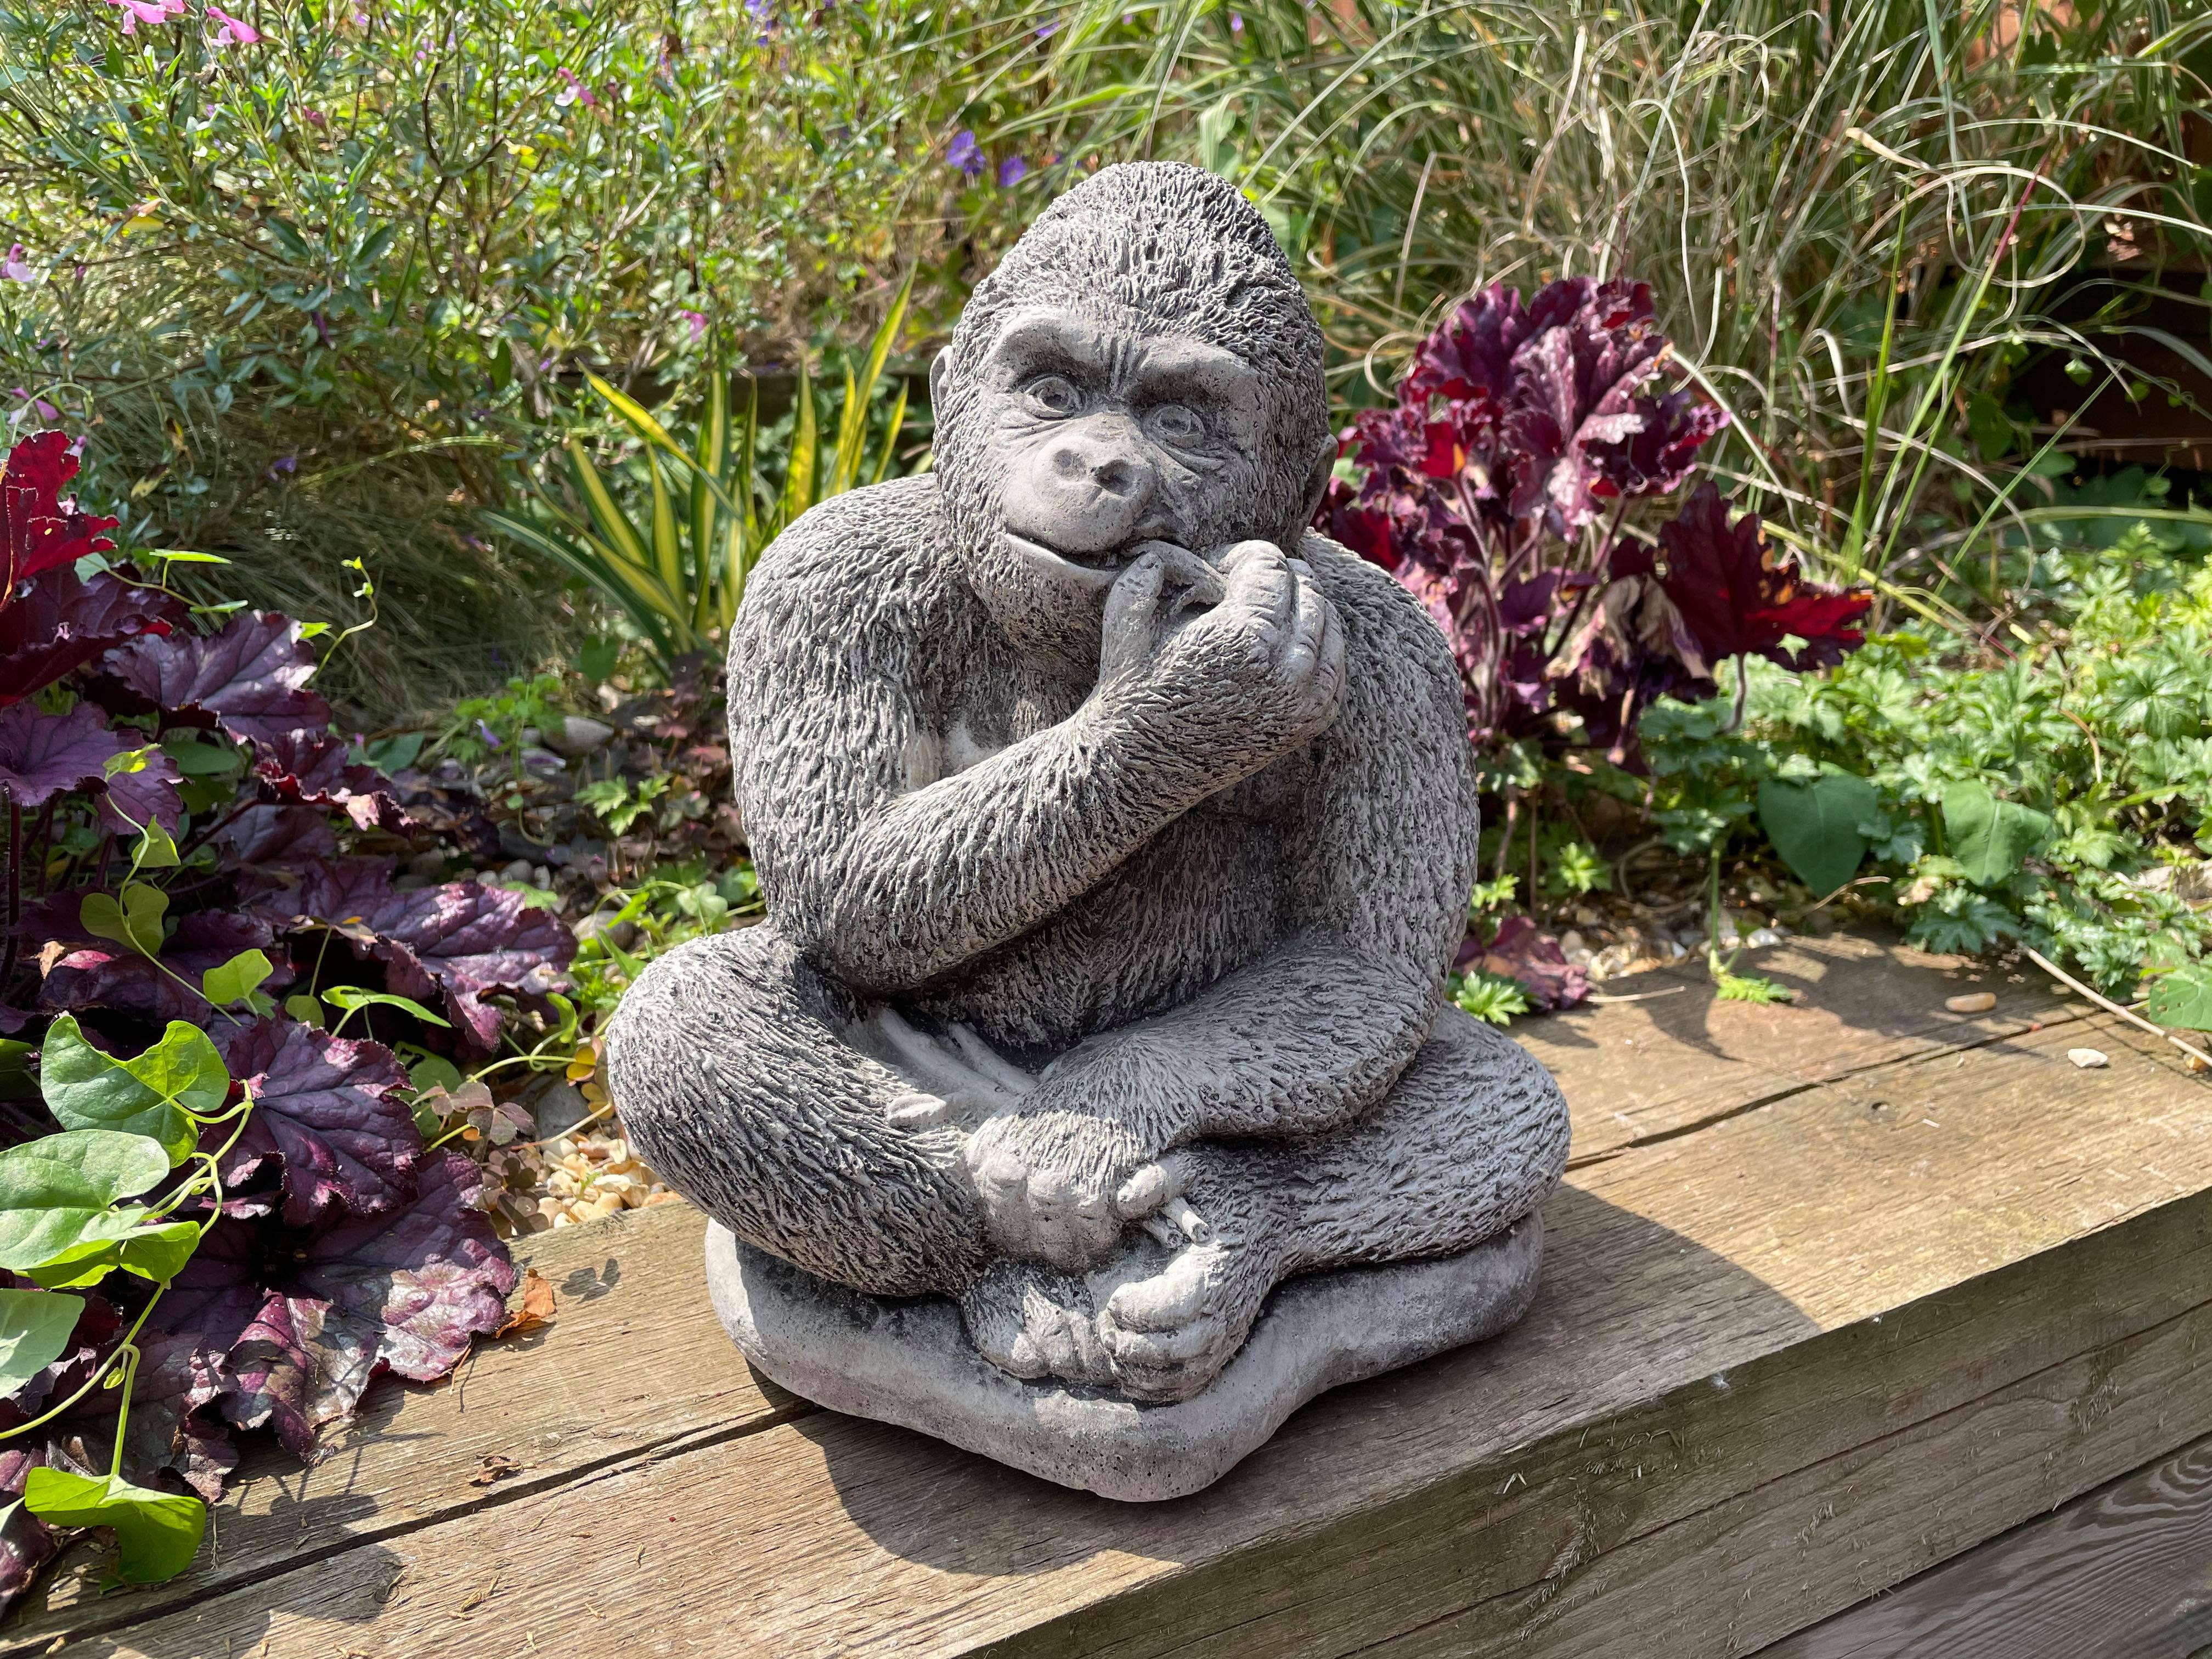 Gorilla eating Banana Stone Garden Statue